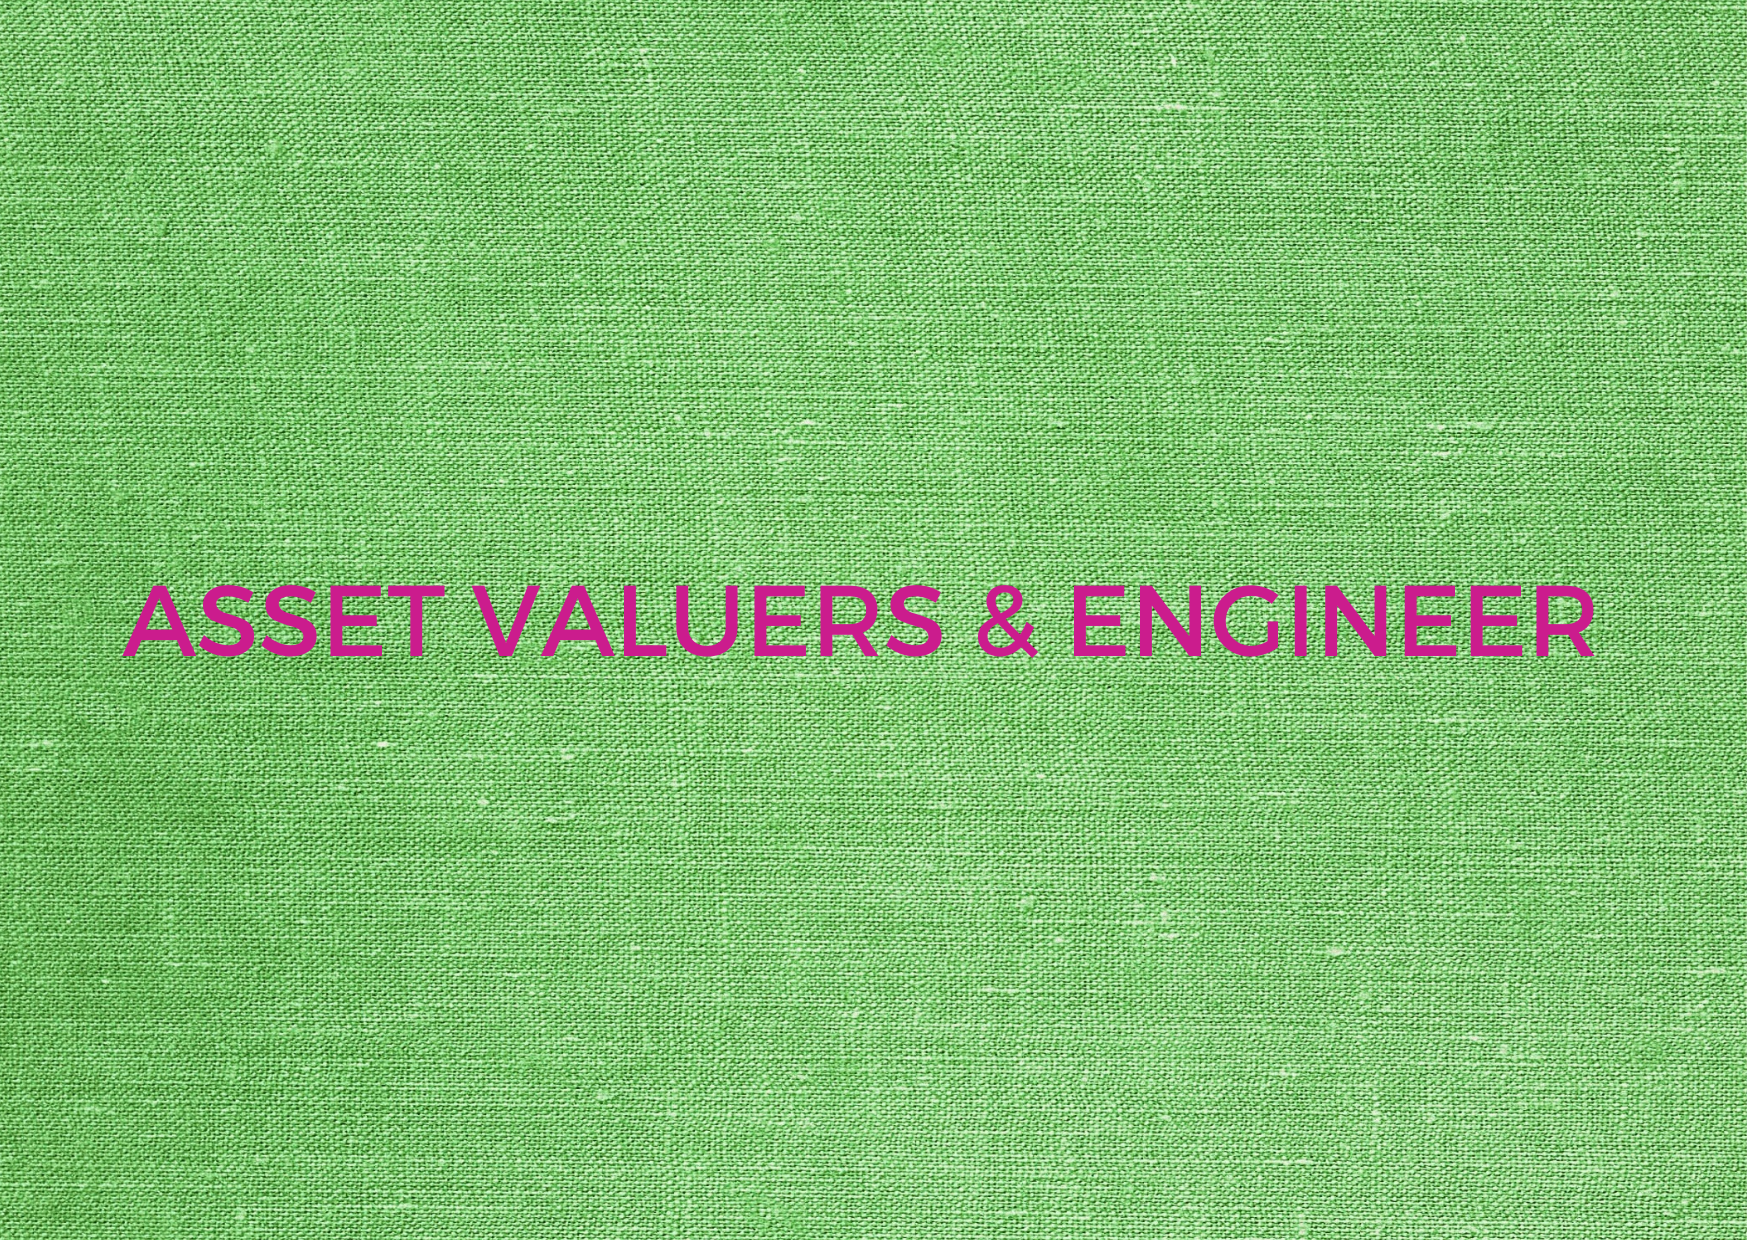 slider of Asset Valuers & Engineer